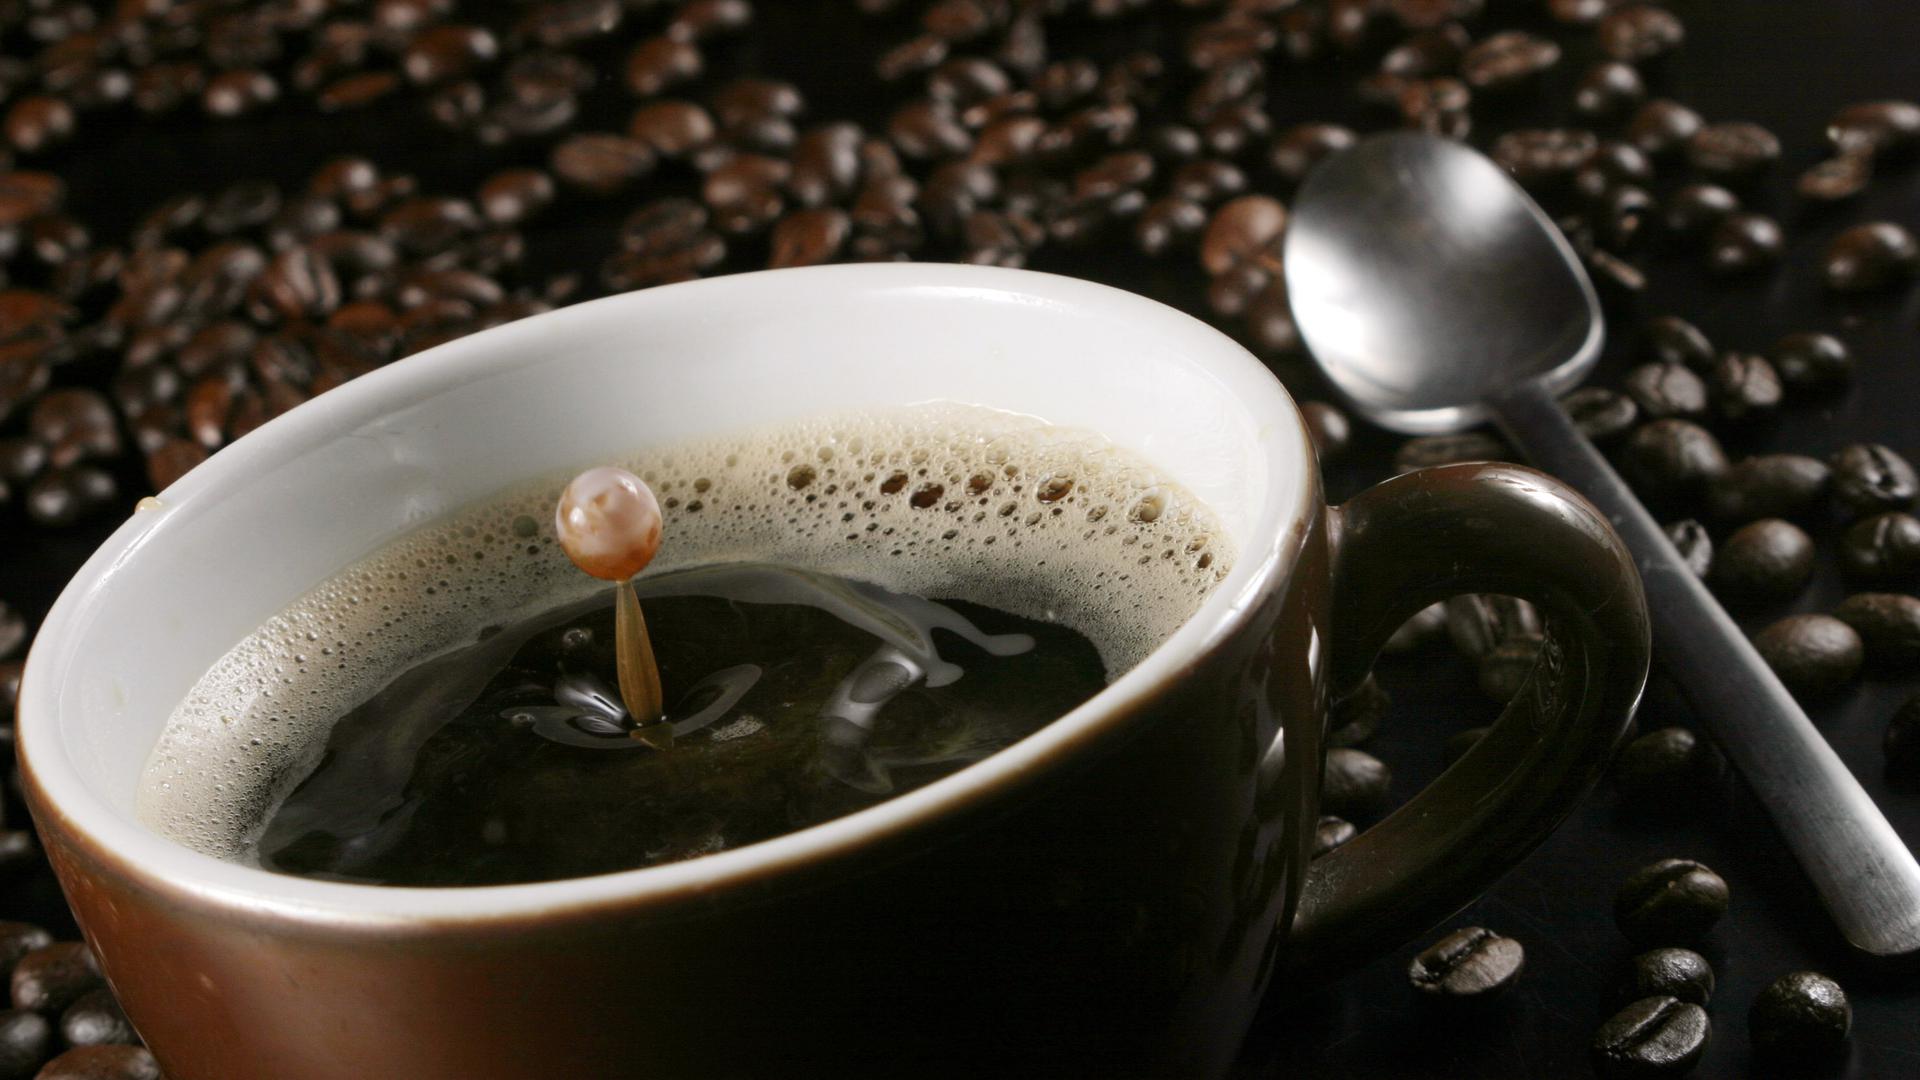 Begehrte Bohnen: Kaffee ist das beliebteste Heißgetränk in Deutschland. Der Preis fürs Pfund Kaffee ist zuletzt in vielen Supermärkten und bei etlichen Discountern gesunken.